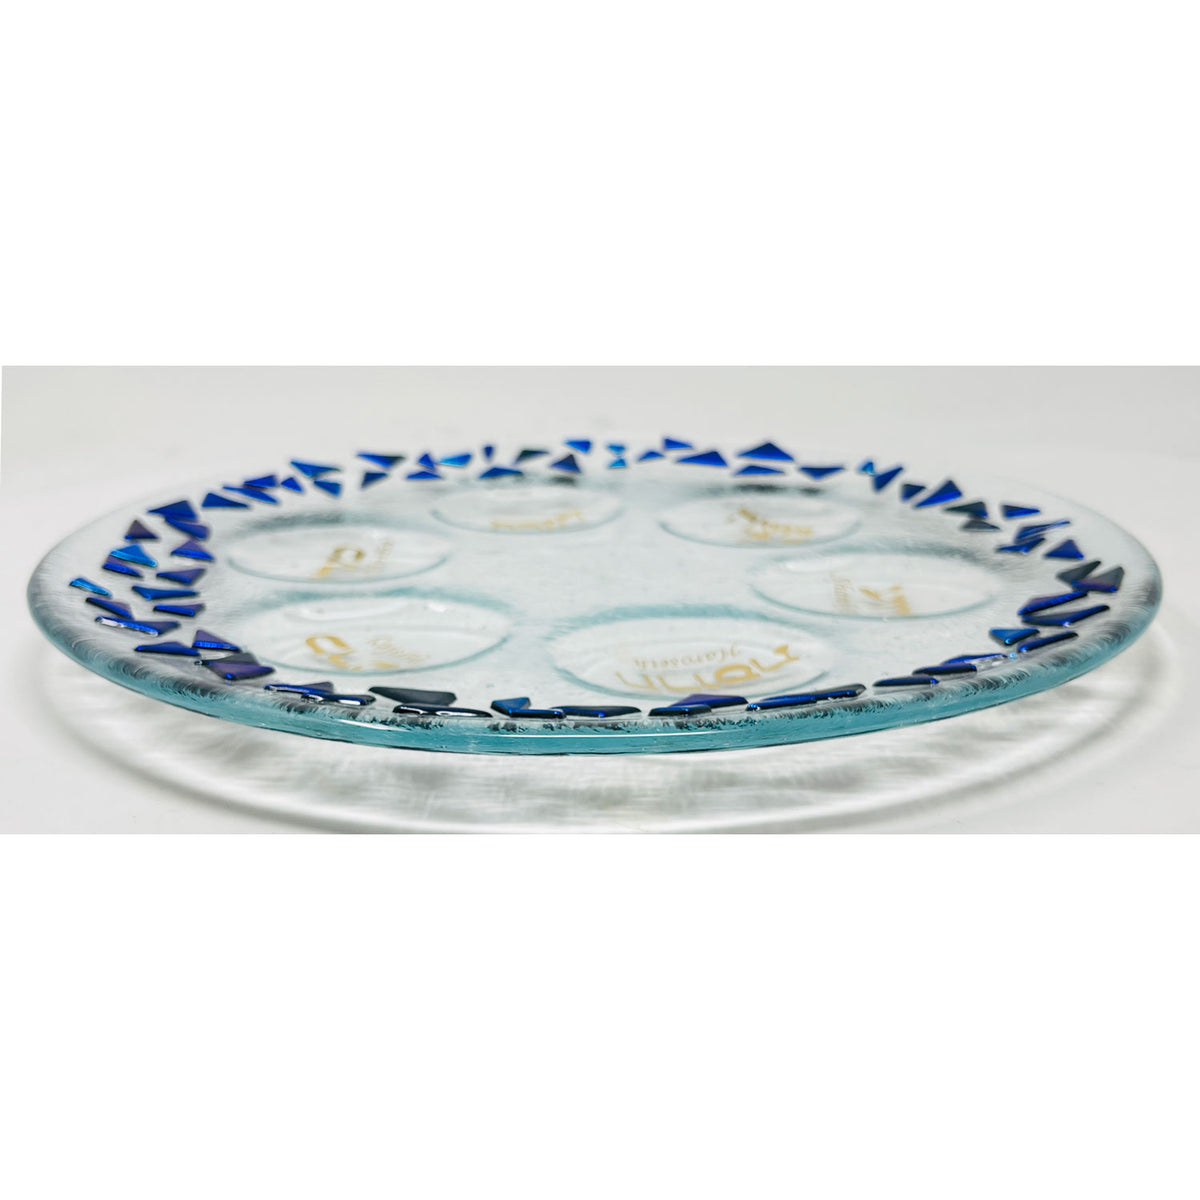 Marcela Rosemberg - Ocean Seder Plate, 11.5"